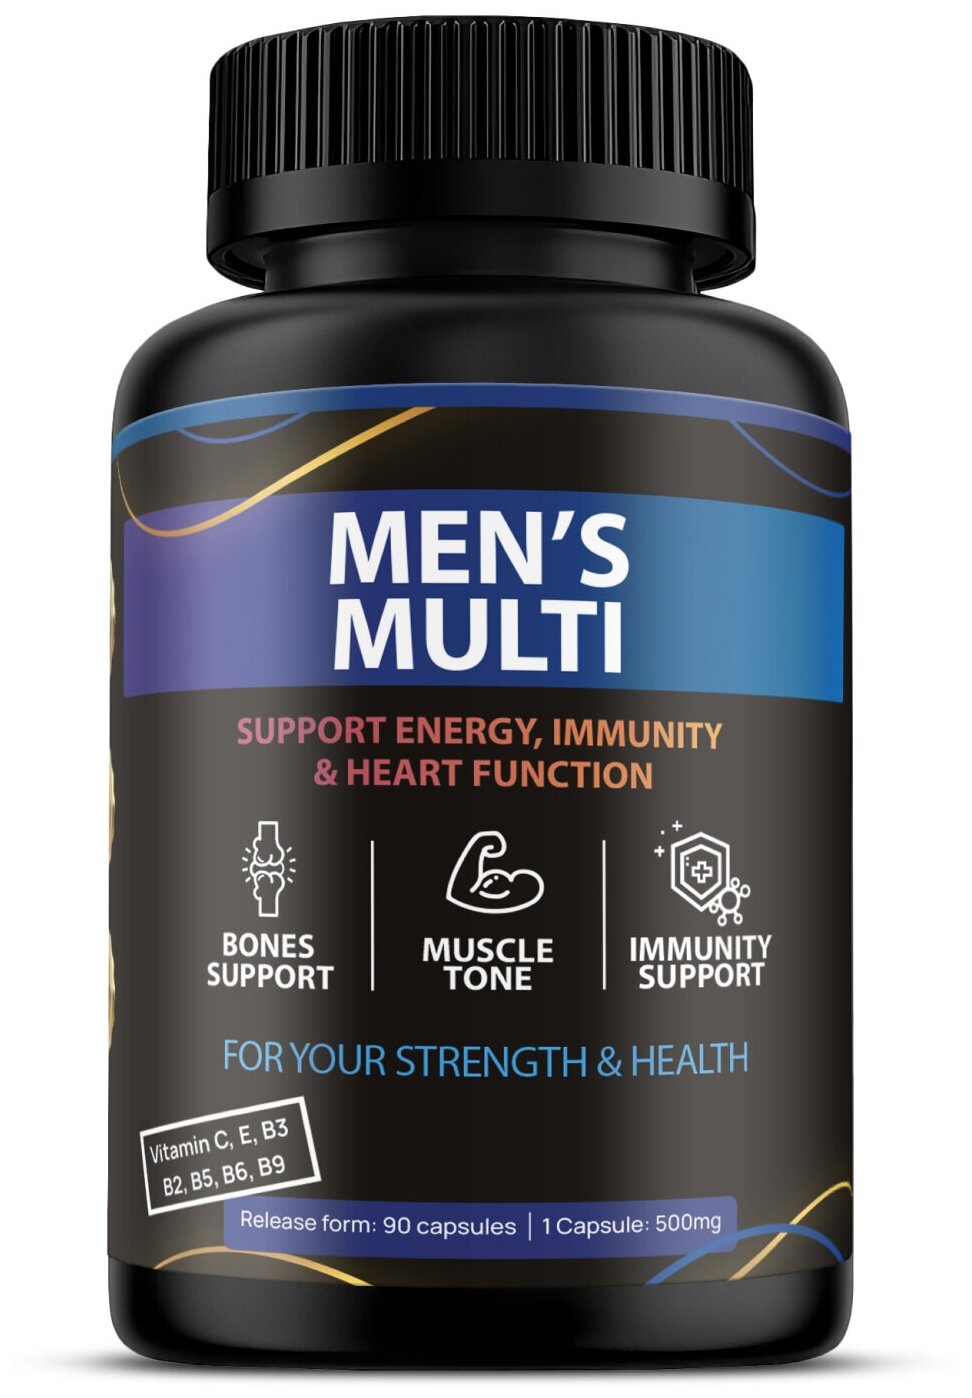 Витамины и витаминные комплексы для мужчин, Fit and Joy, спортивный комплекс для иммунитета, мышц, мультивитамины, магний, кальций, мужское здоровье с биотином